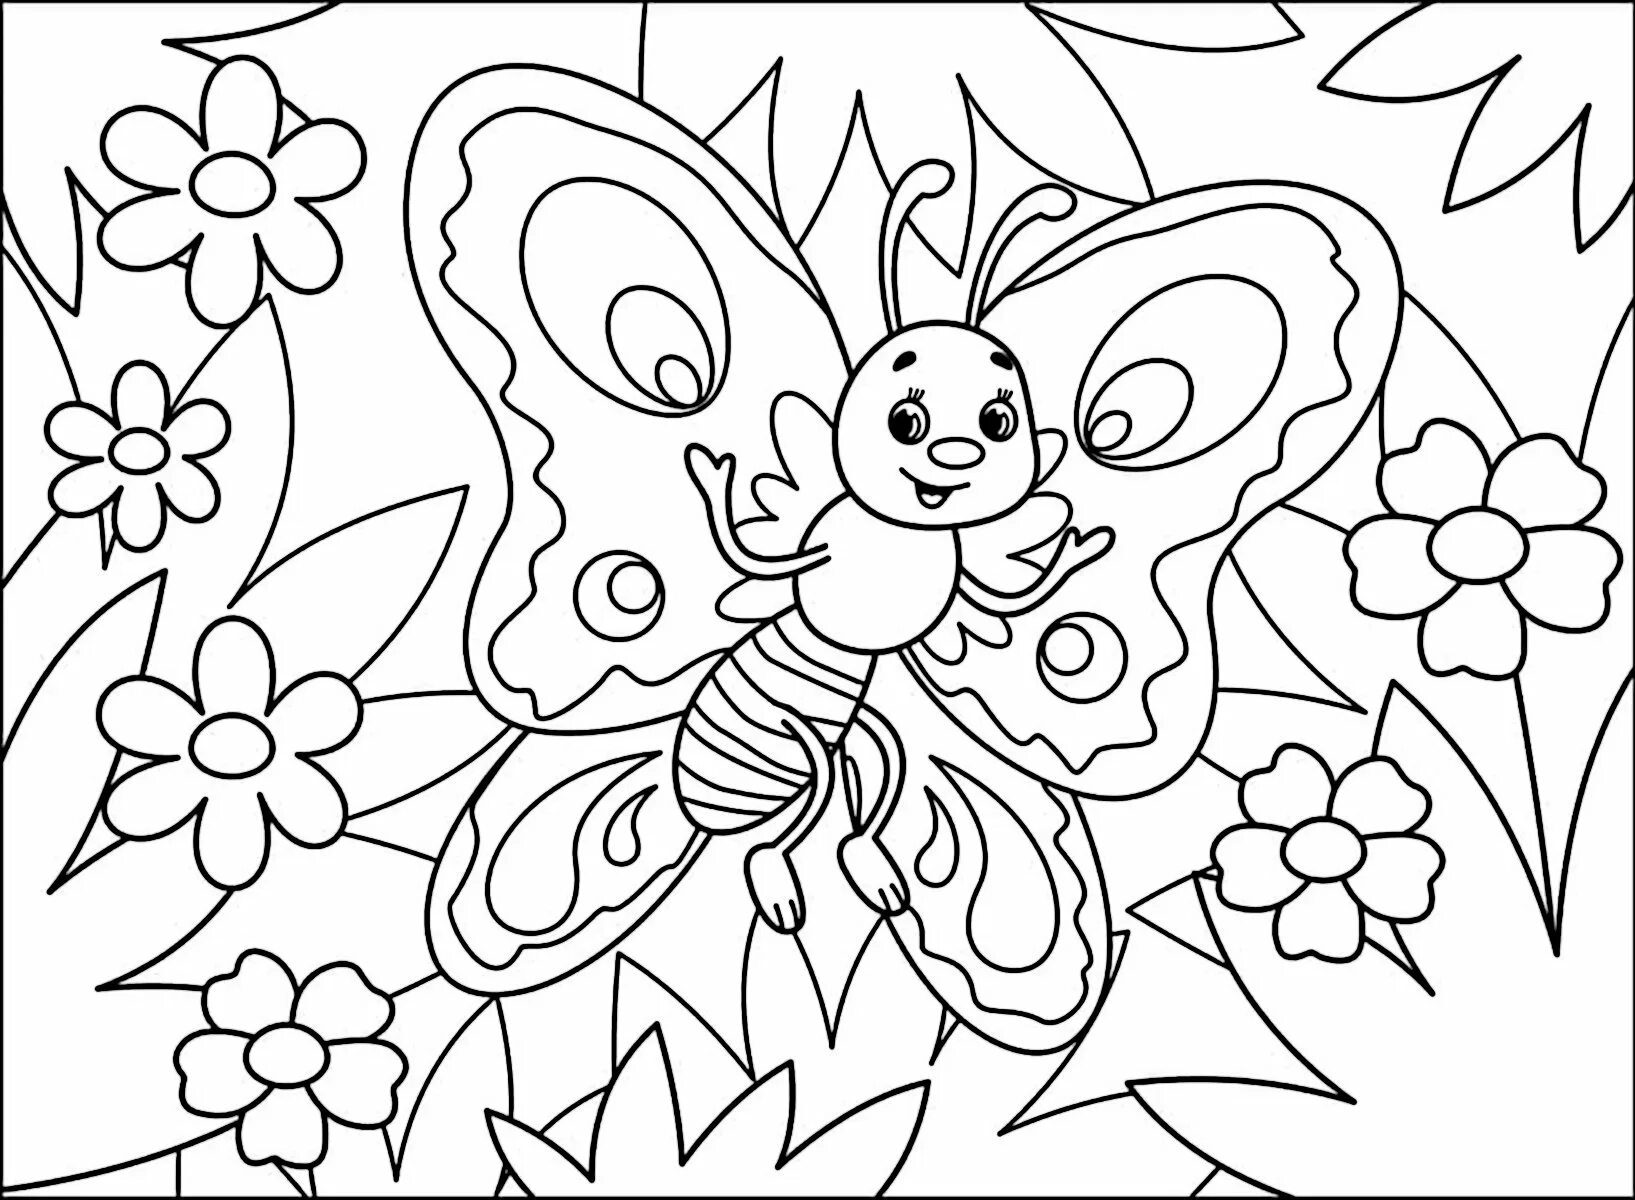 Бабочка раскраска для детей. Цветы и бабочки. Раскраска. Раскраски цветов и бабочек. Раскраска для девочек бабочки. Бабочки раскраски для детей 5 6 лет